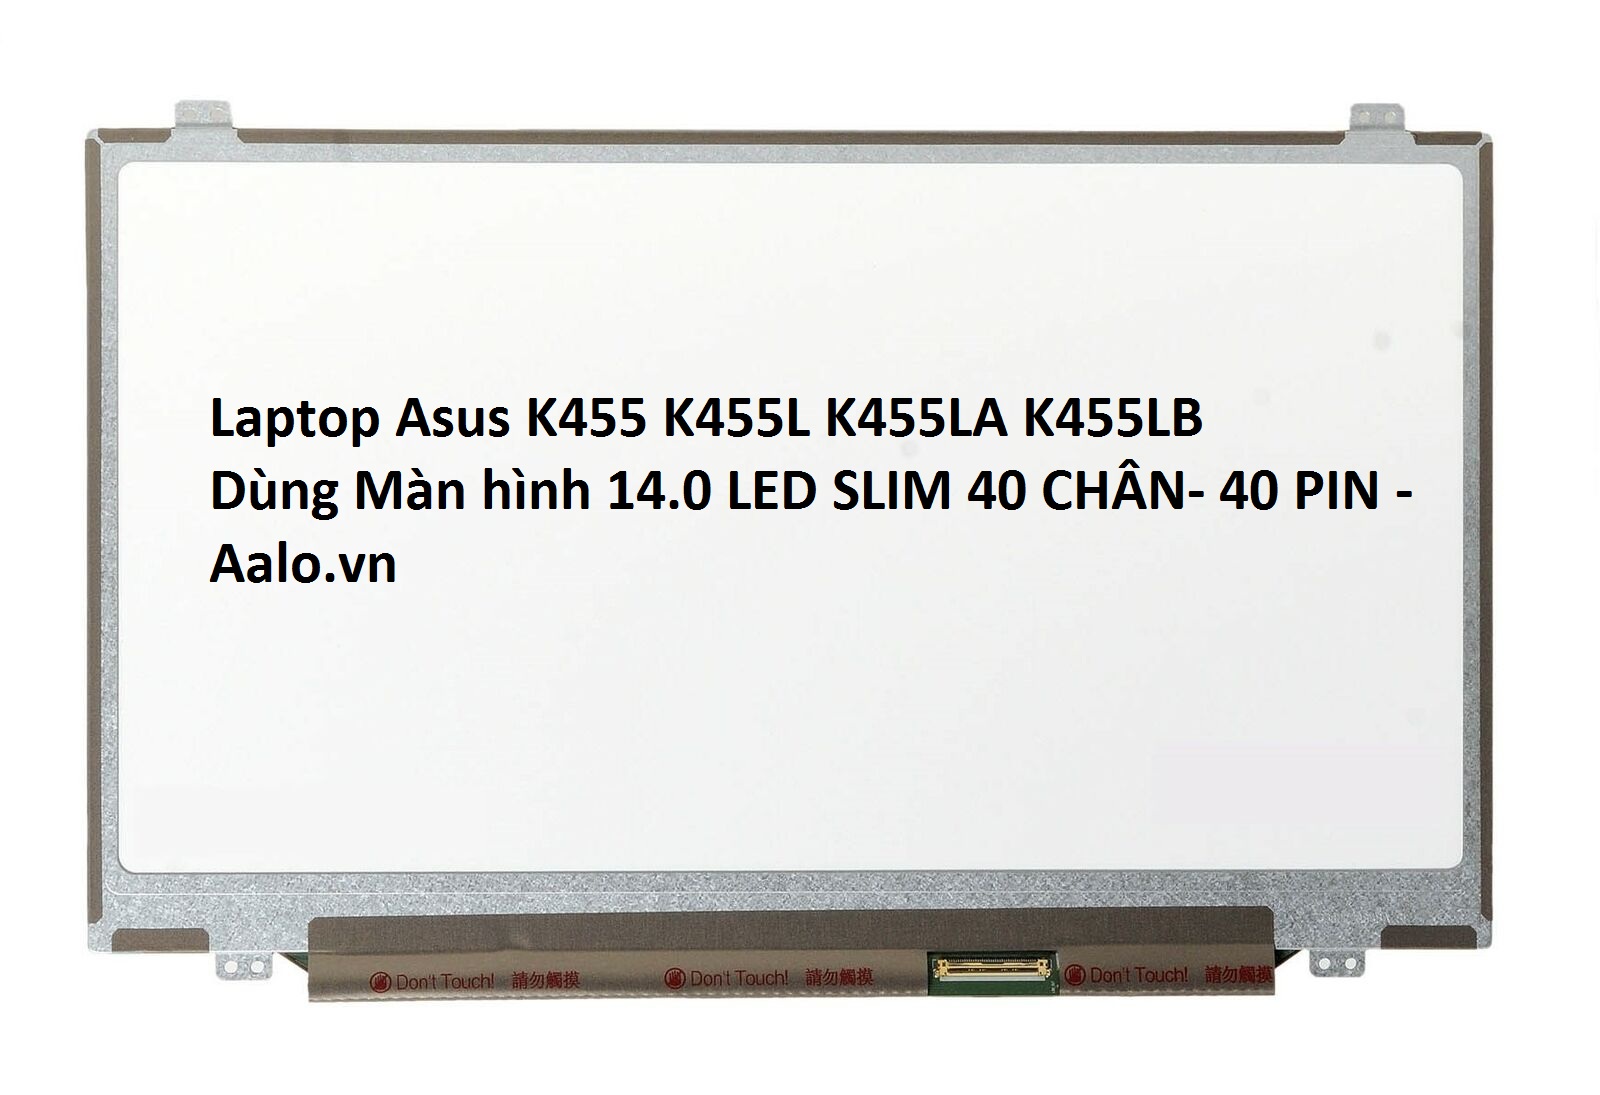 Màn hình Laptop Asus K455 K455L K455LA K455LB - Aalo.vn